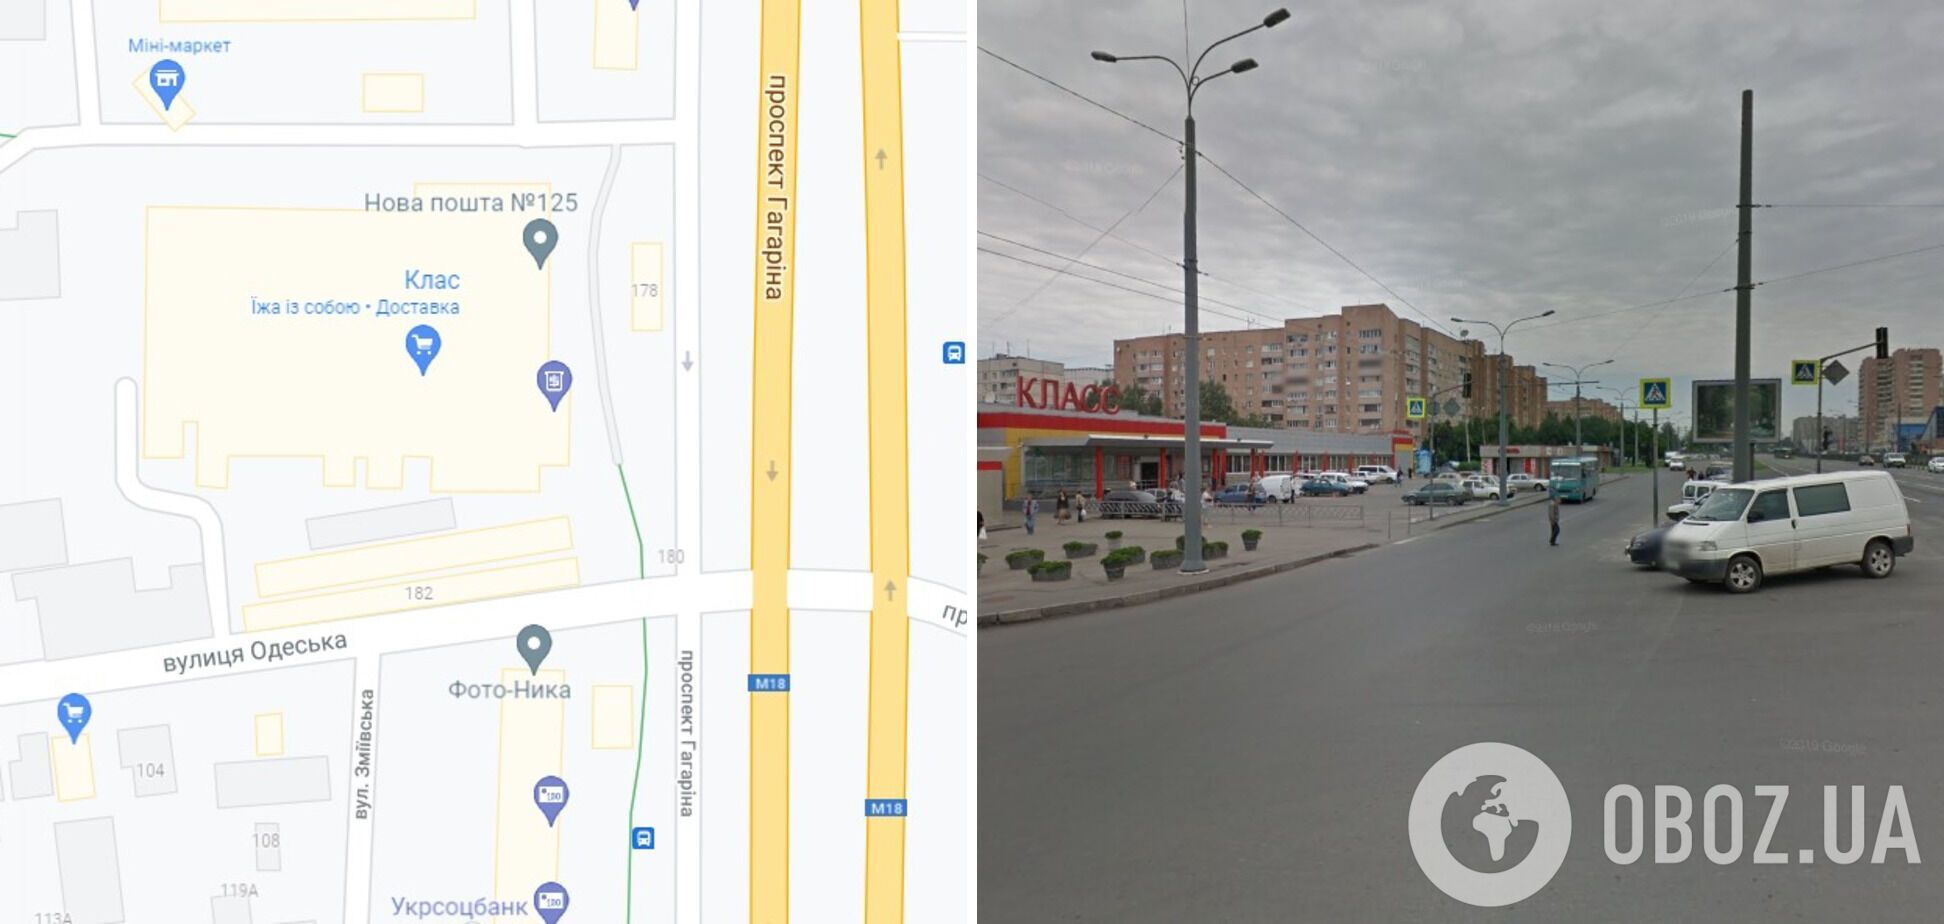 ДТП произошло на перекрестке проспекта Гагарина и улицы Одесской в Харькове